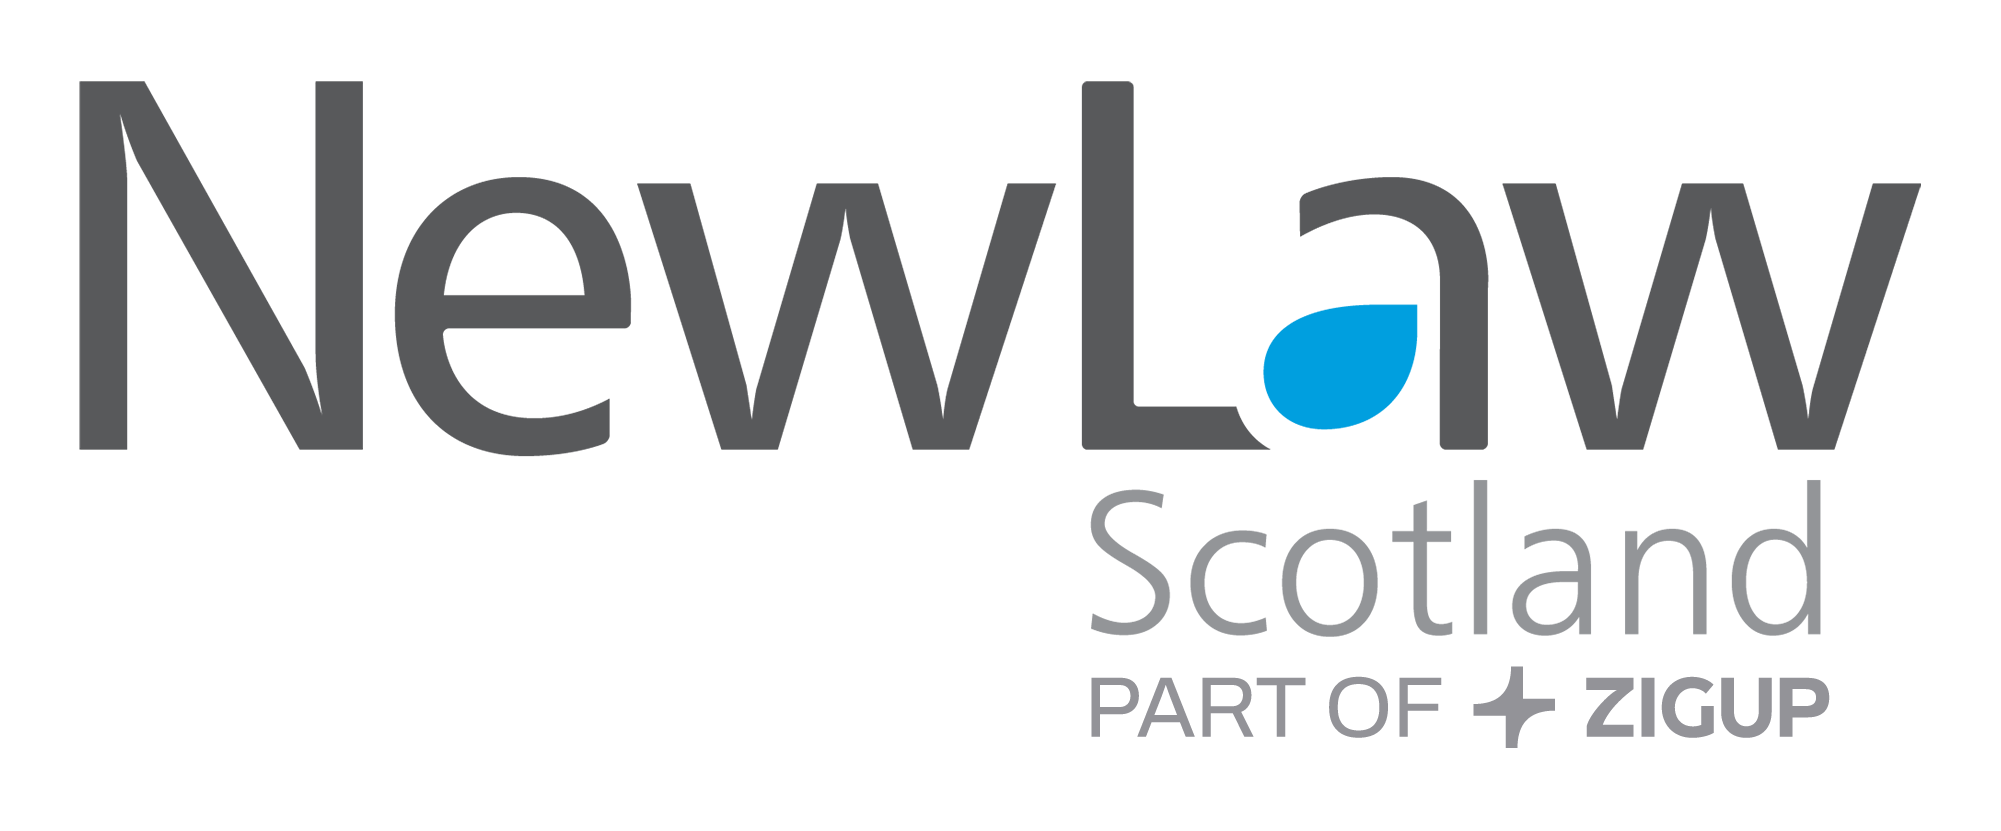 NewLaw Logo